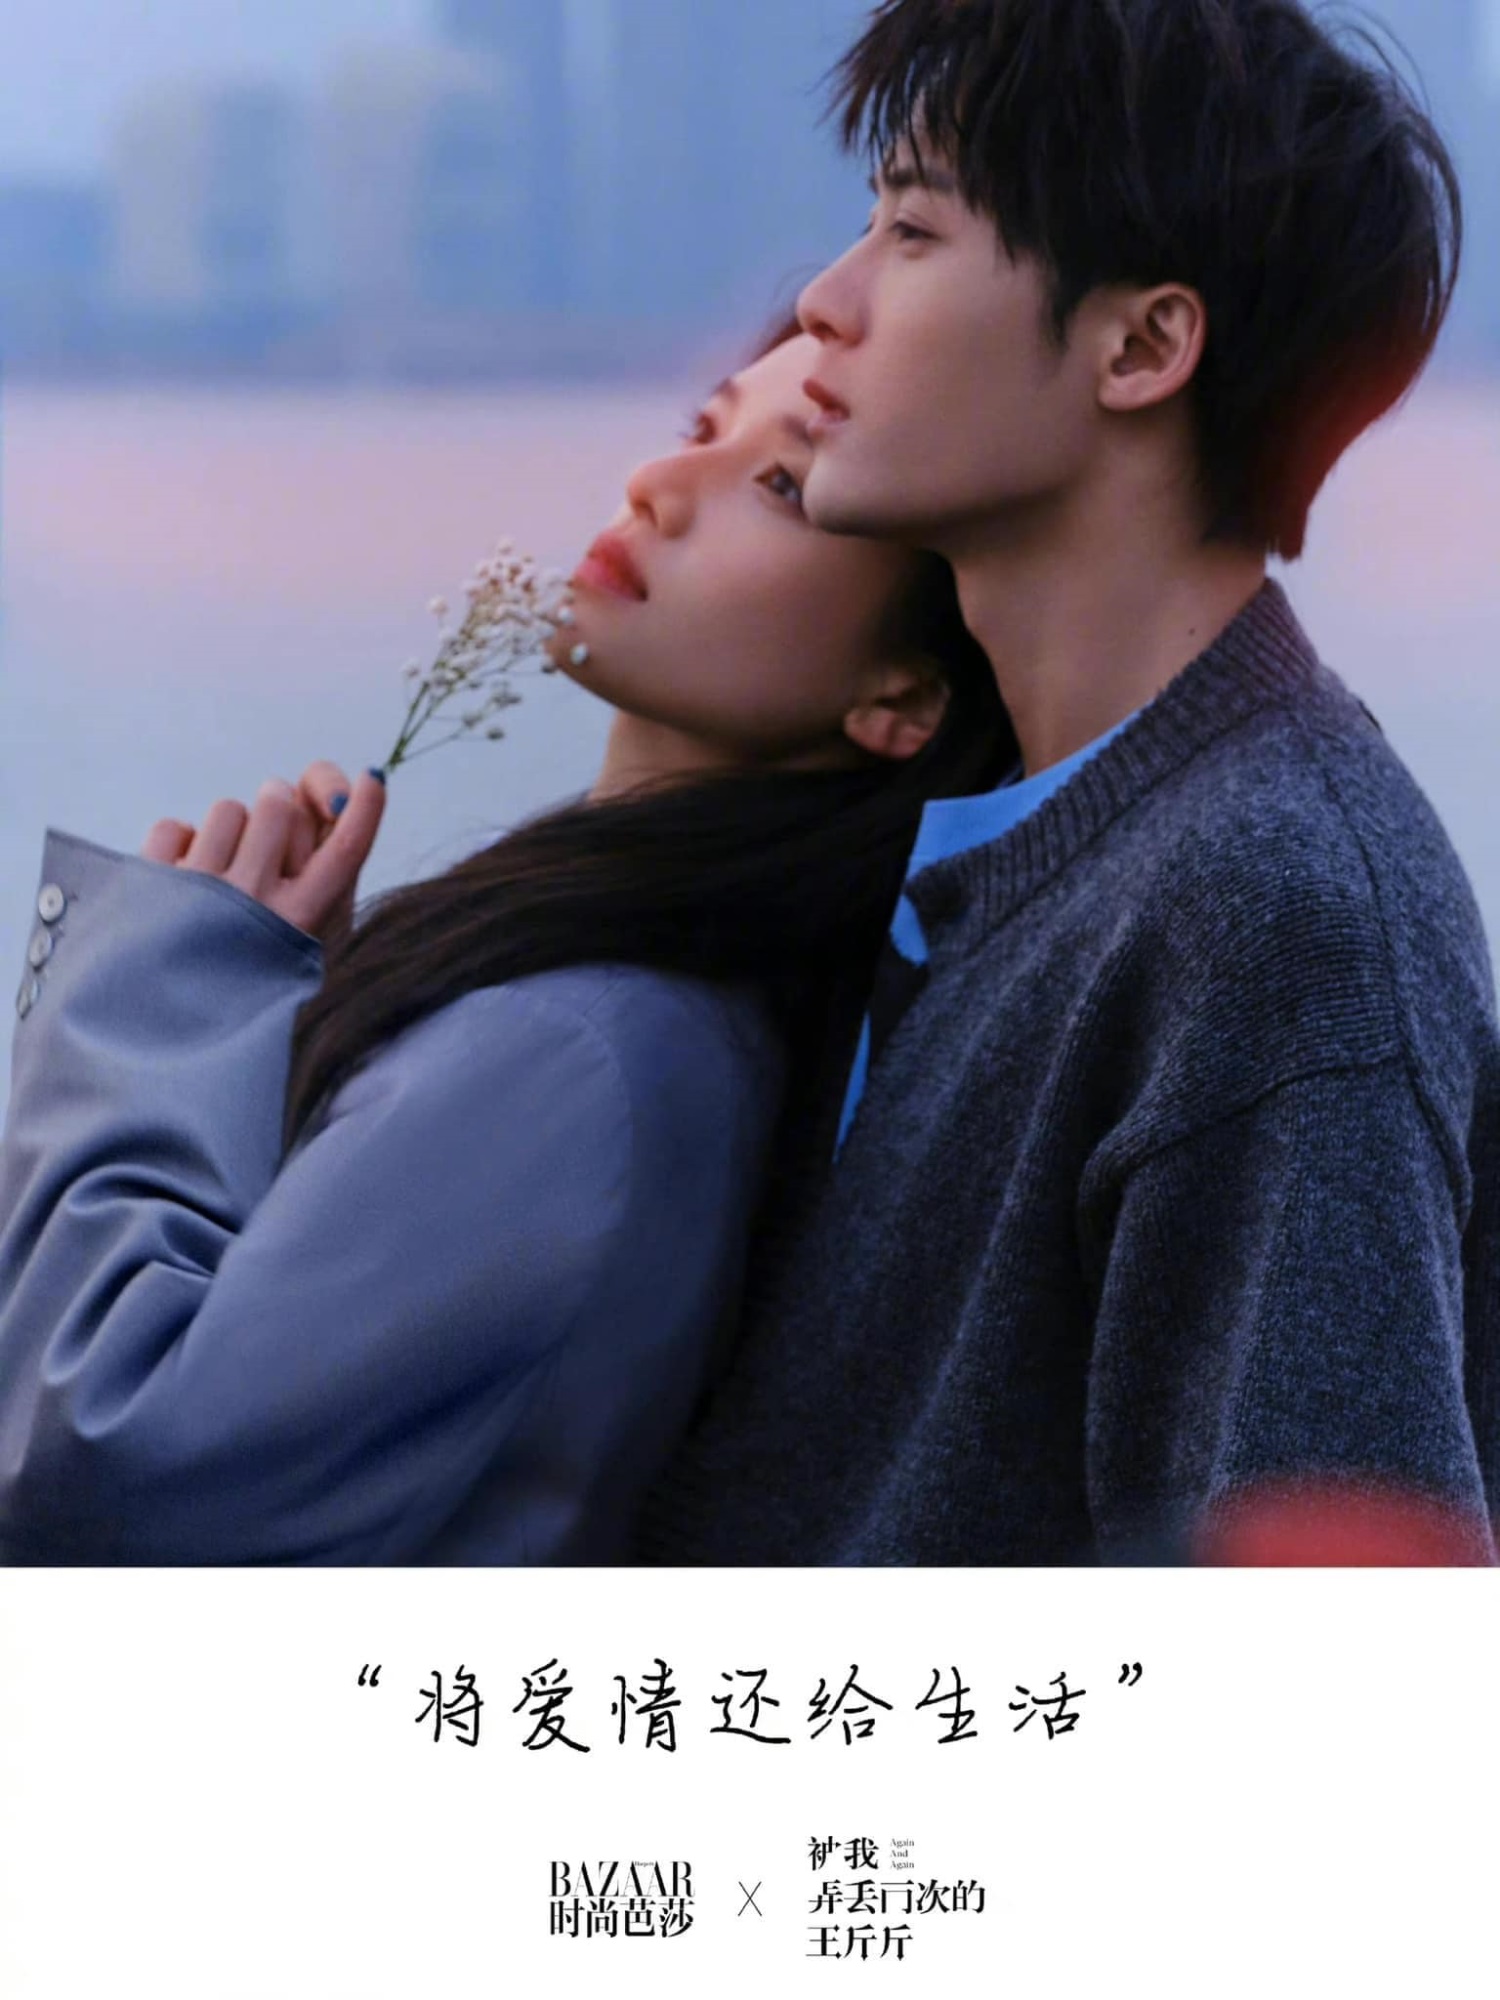 Phim của 'tình cũ màn ảnh' Dương Tử và Trương Tịnh Nghi thông báo tin vui chấn động - Ảnh 3